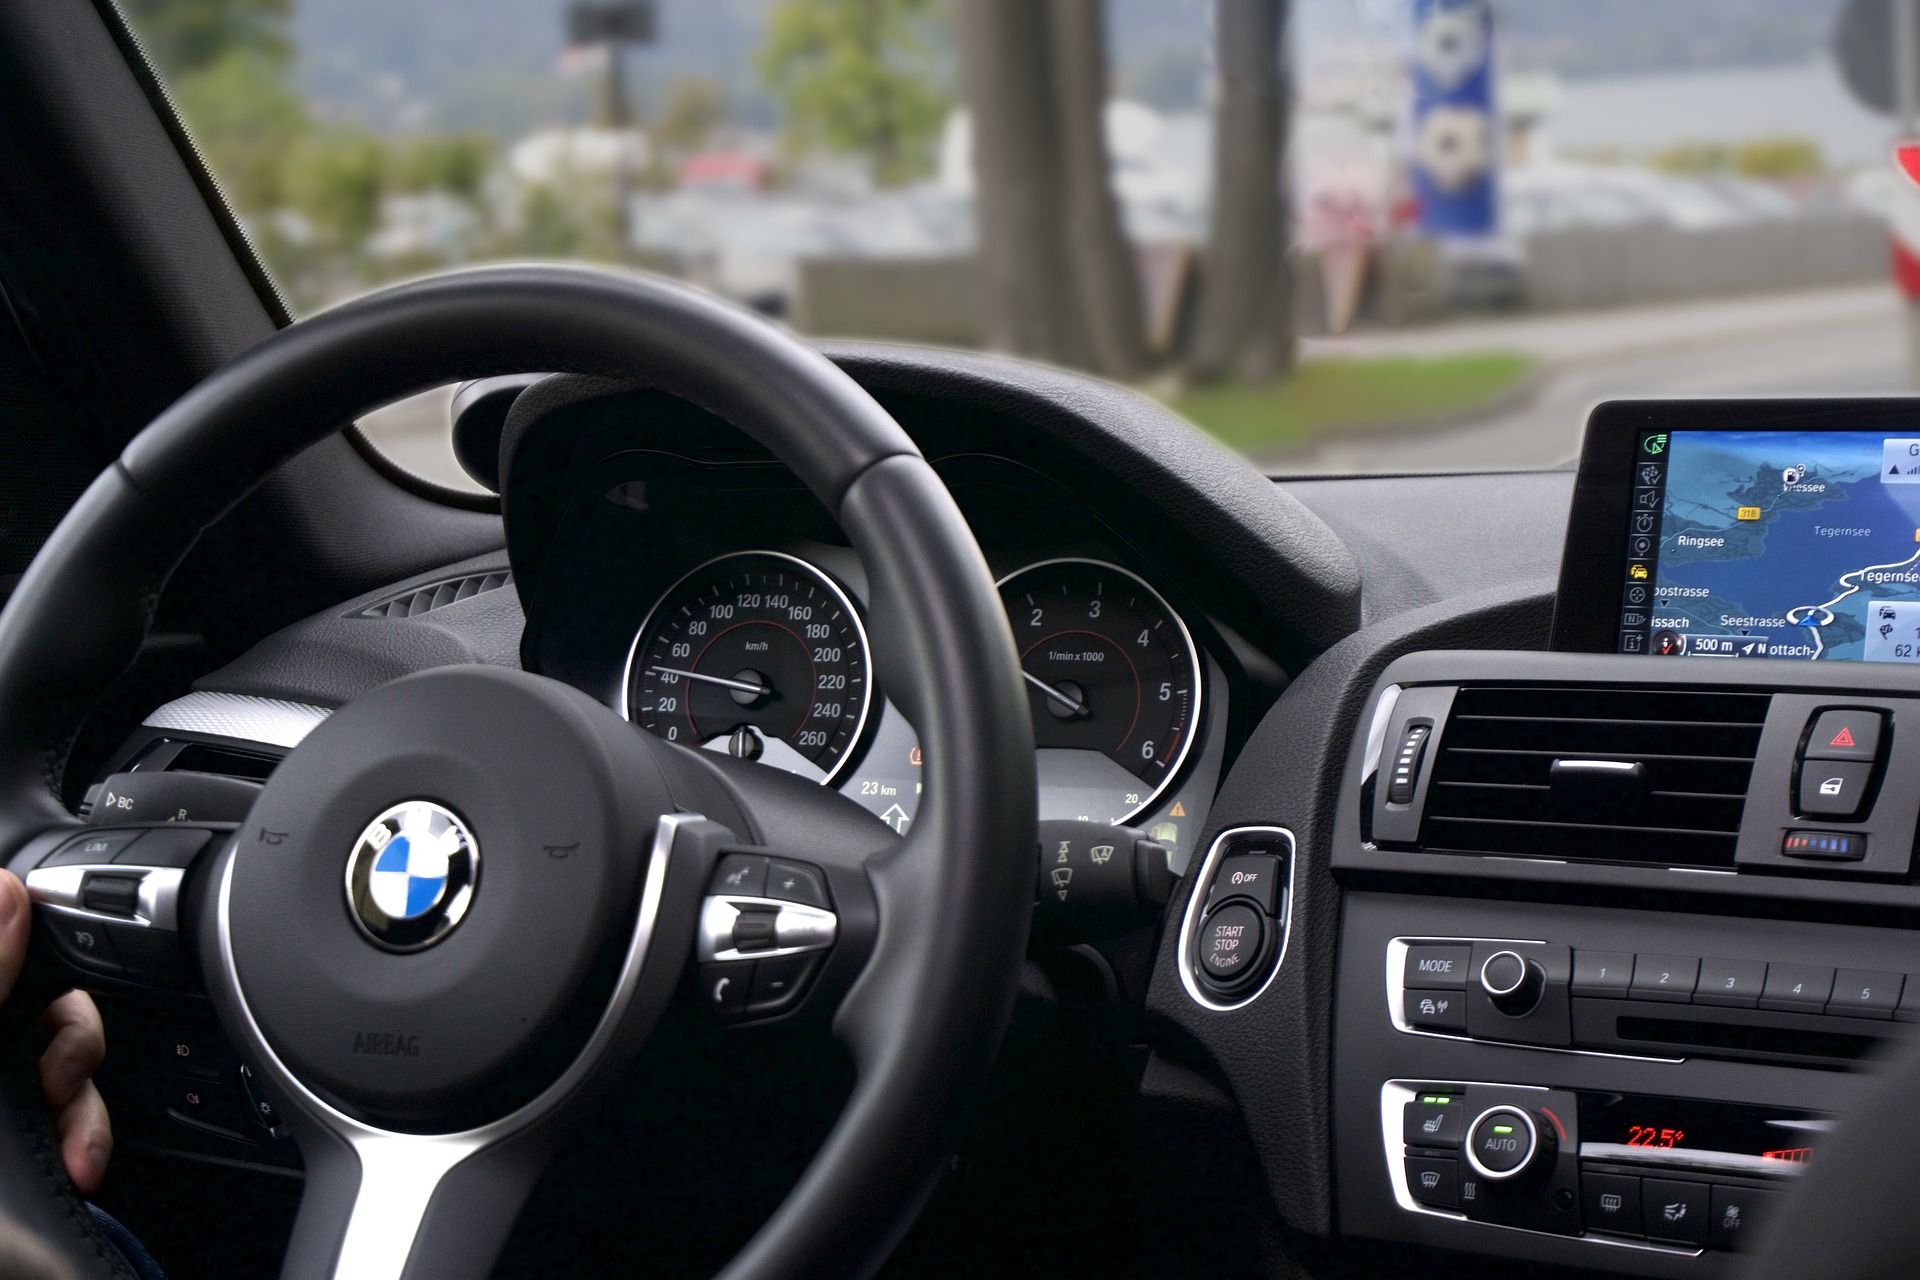 bmw-car-interior-steering-wheel-infotainment